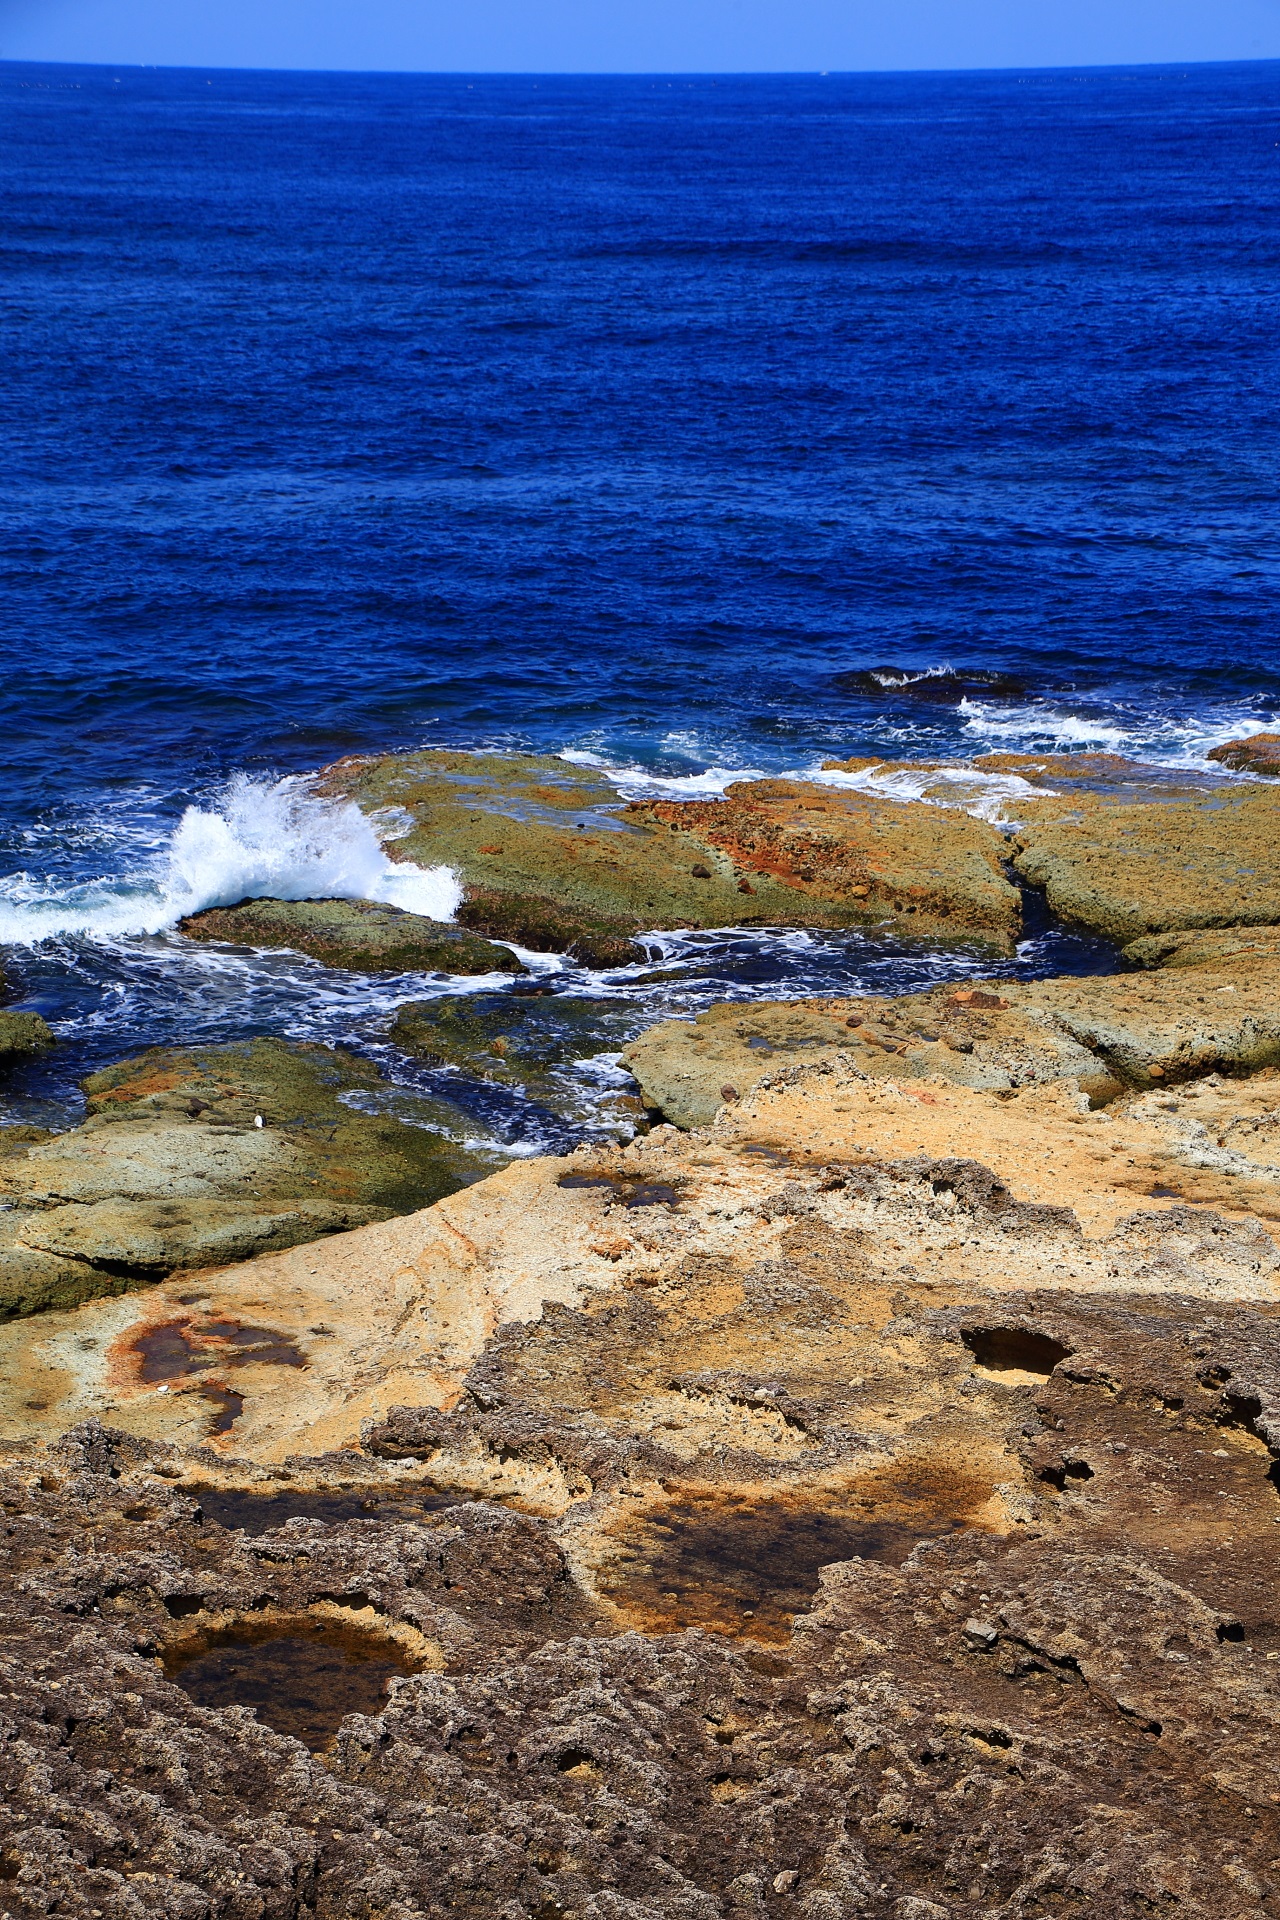 茶系や赤系や黄系やオレンジ系や緑系など岩がいろんな色をしている五色浜